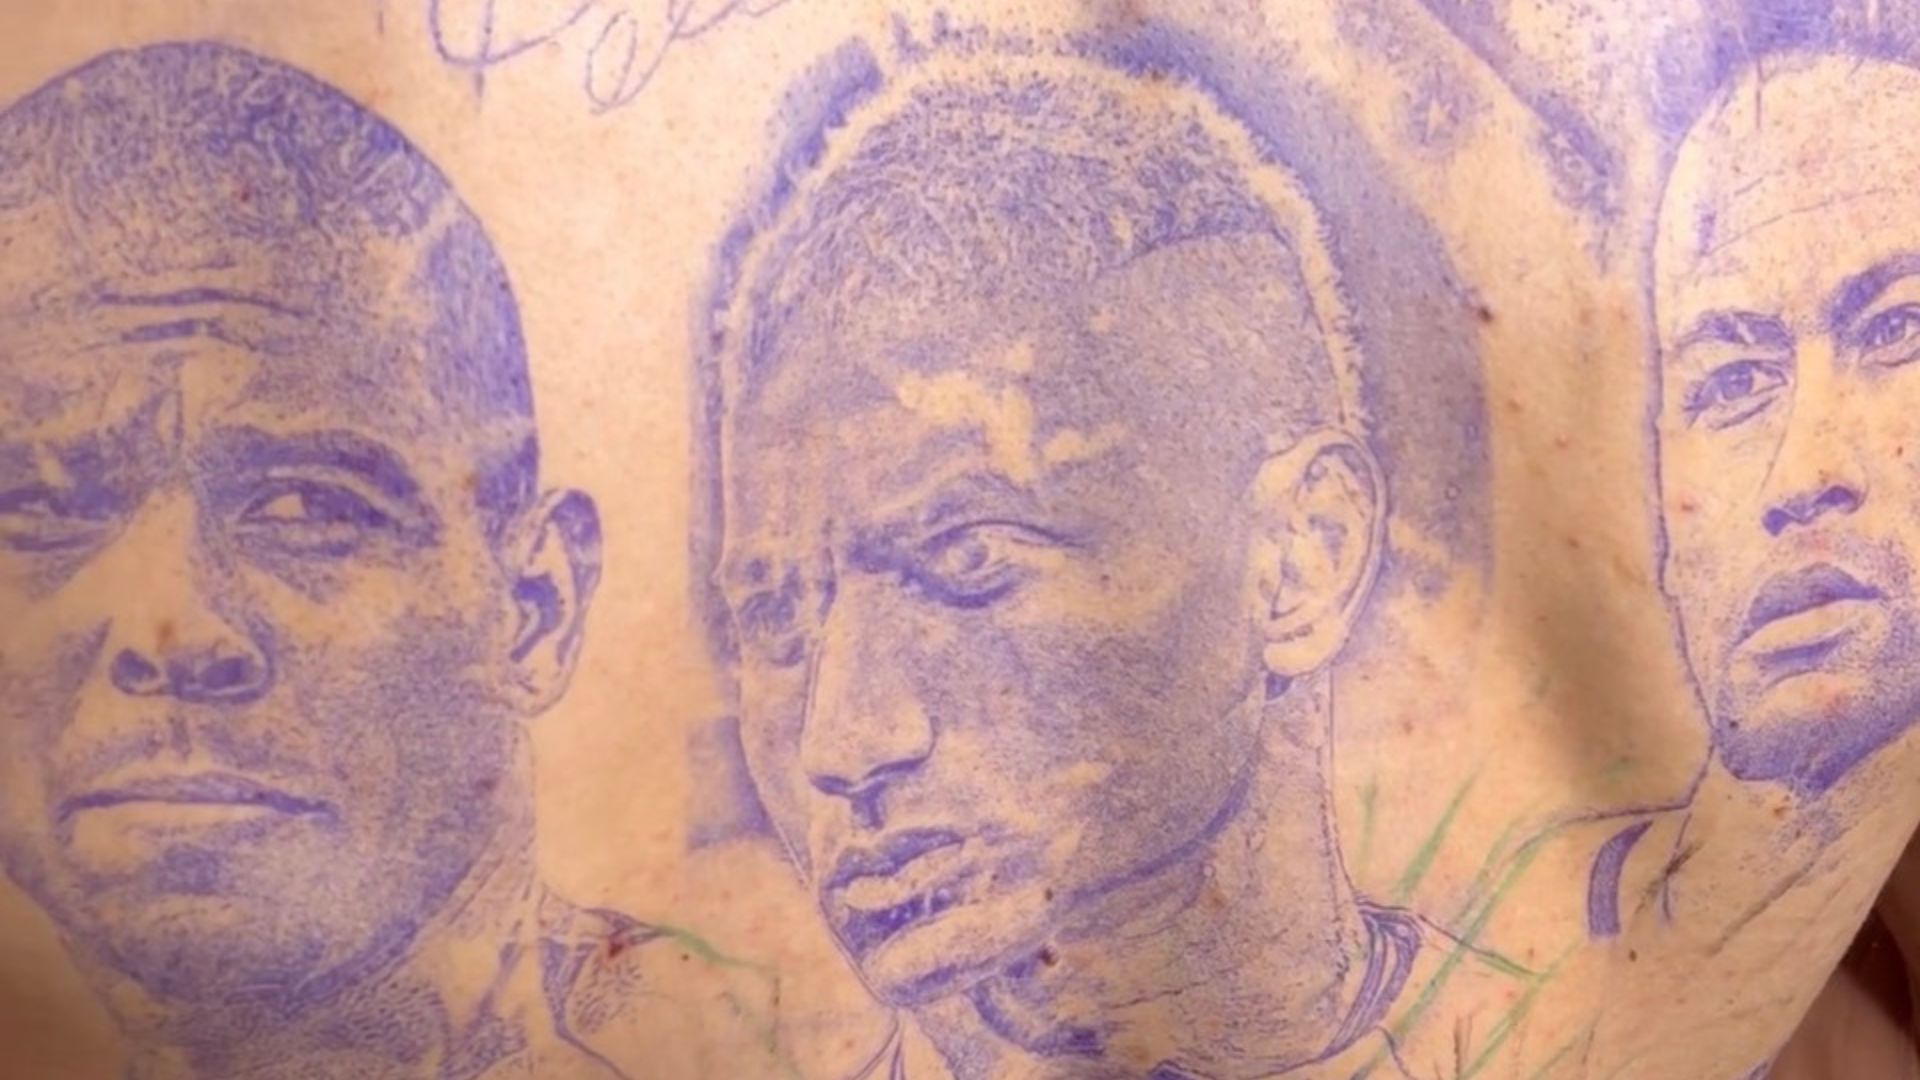 Richarlison faz tatuagem de Ronaldo e Neymar após a Copa do Mundo